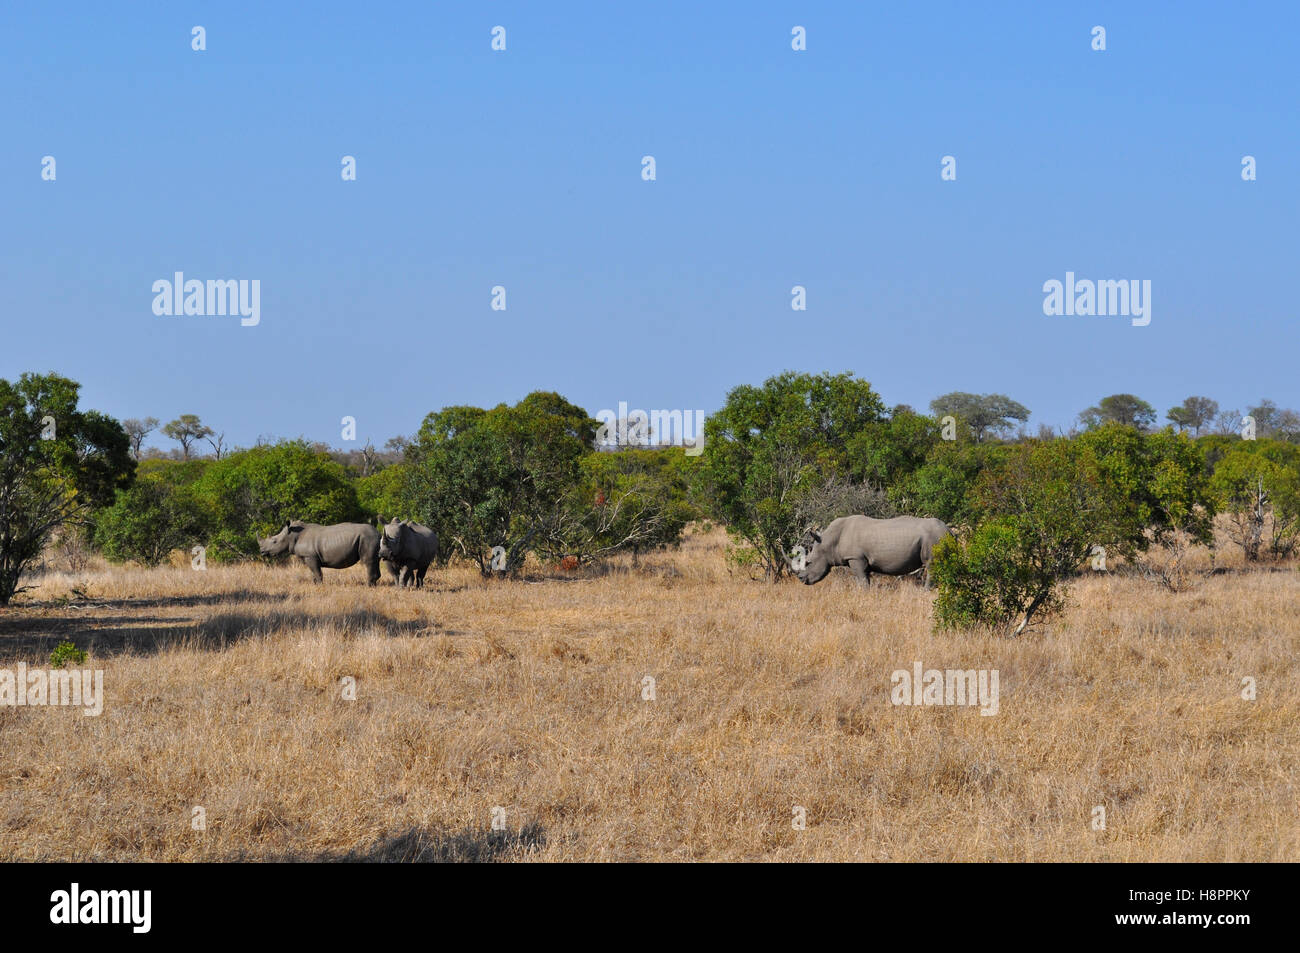 Safari en Afrique du Sud, vert savannah : rhinocéros noirs dans une prairie à l'entrée du Parc National Kruger, la plus grande réserve animalière en Afrique depuis 1898 Banque D'Images